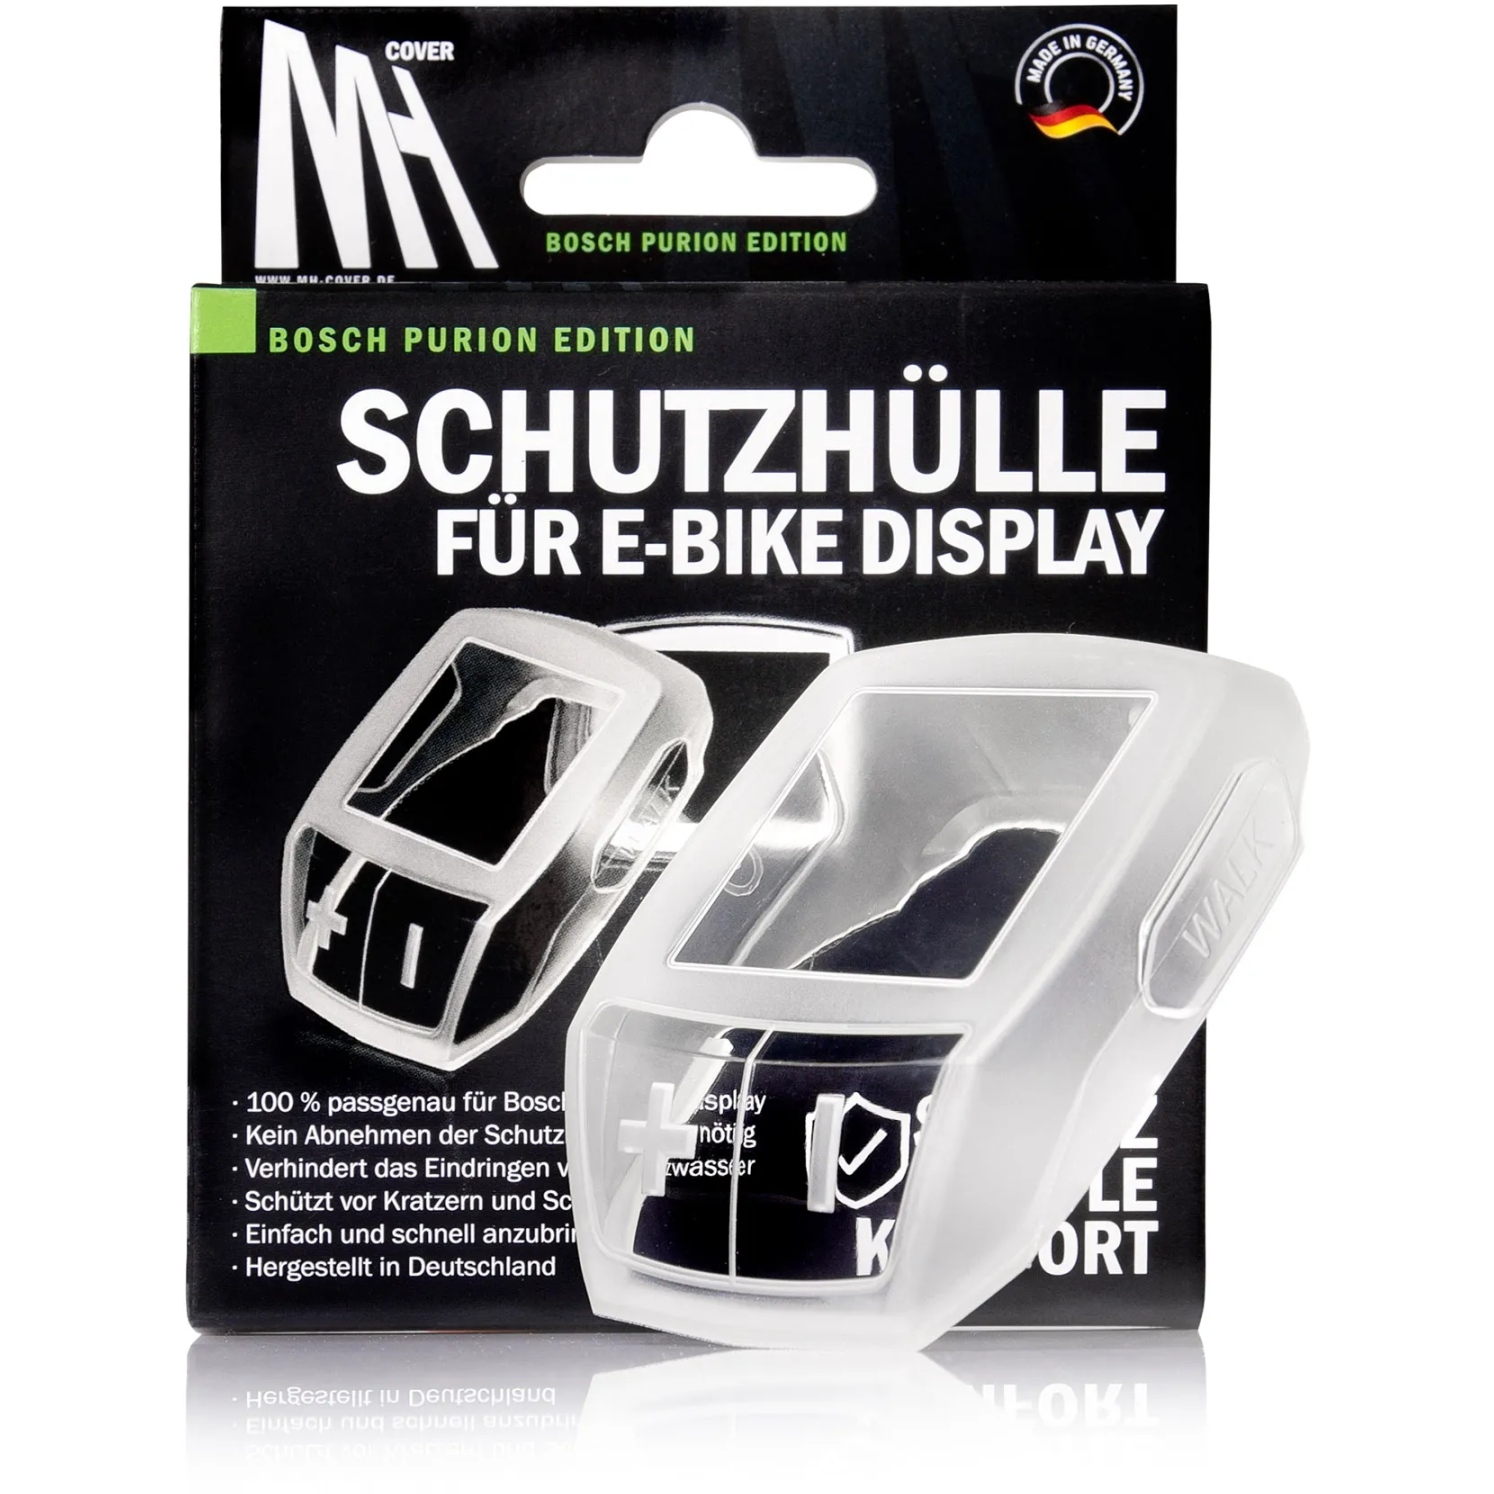 Produktbild von Bosch MH Cover PURION EDITION - Schutzhülle für E-Bike Display